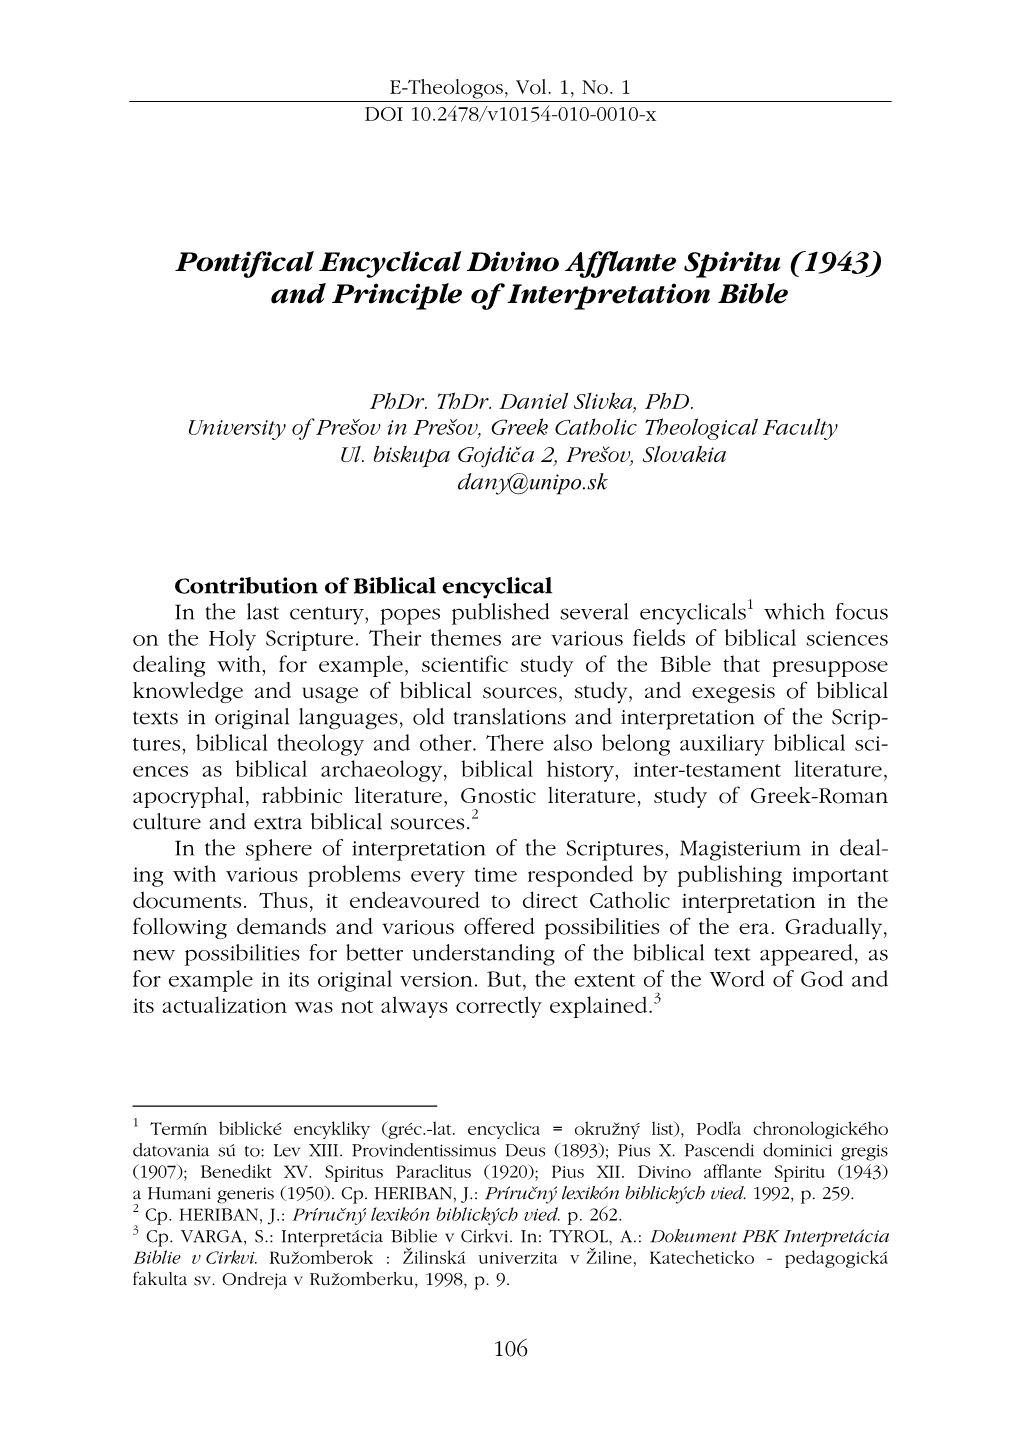 Pontifical Encyclical Divino Afflante Spiritu (1943) and Principle of Interpretation Bible